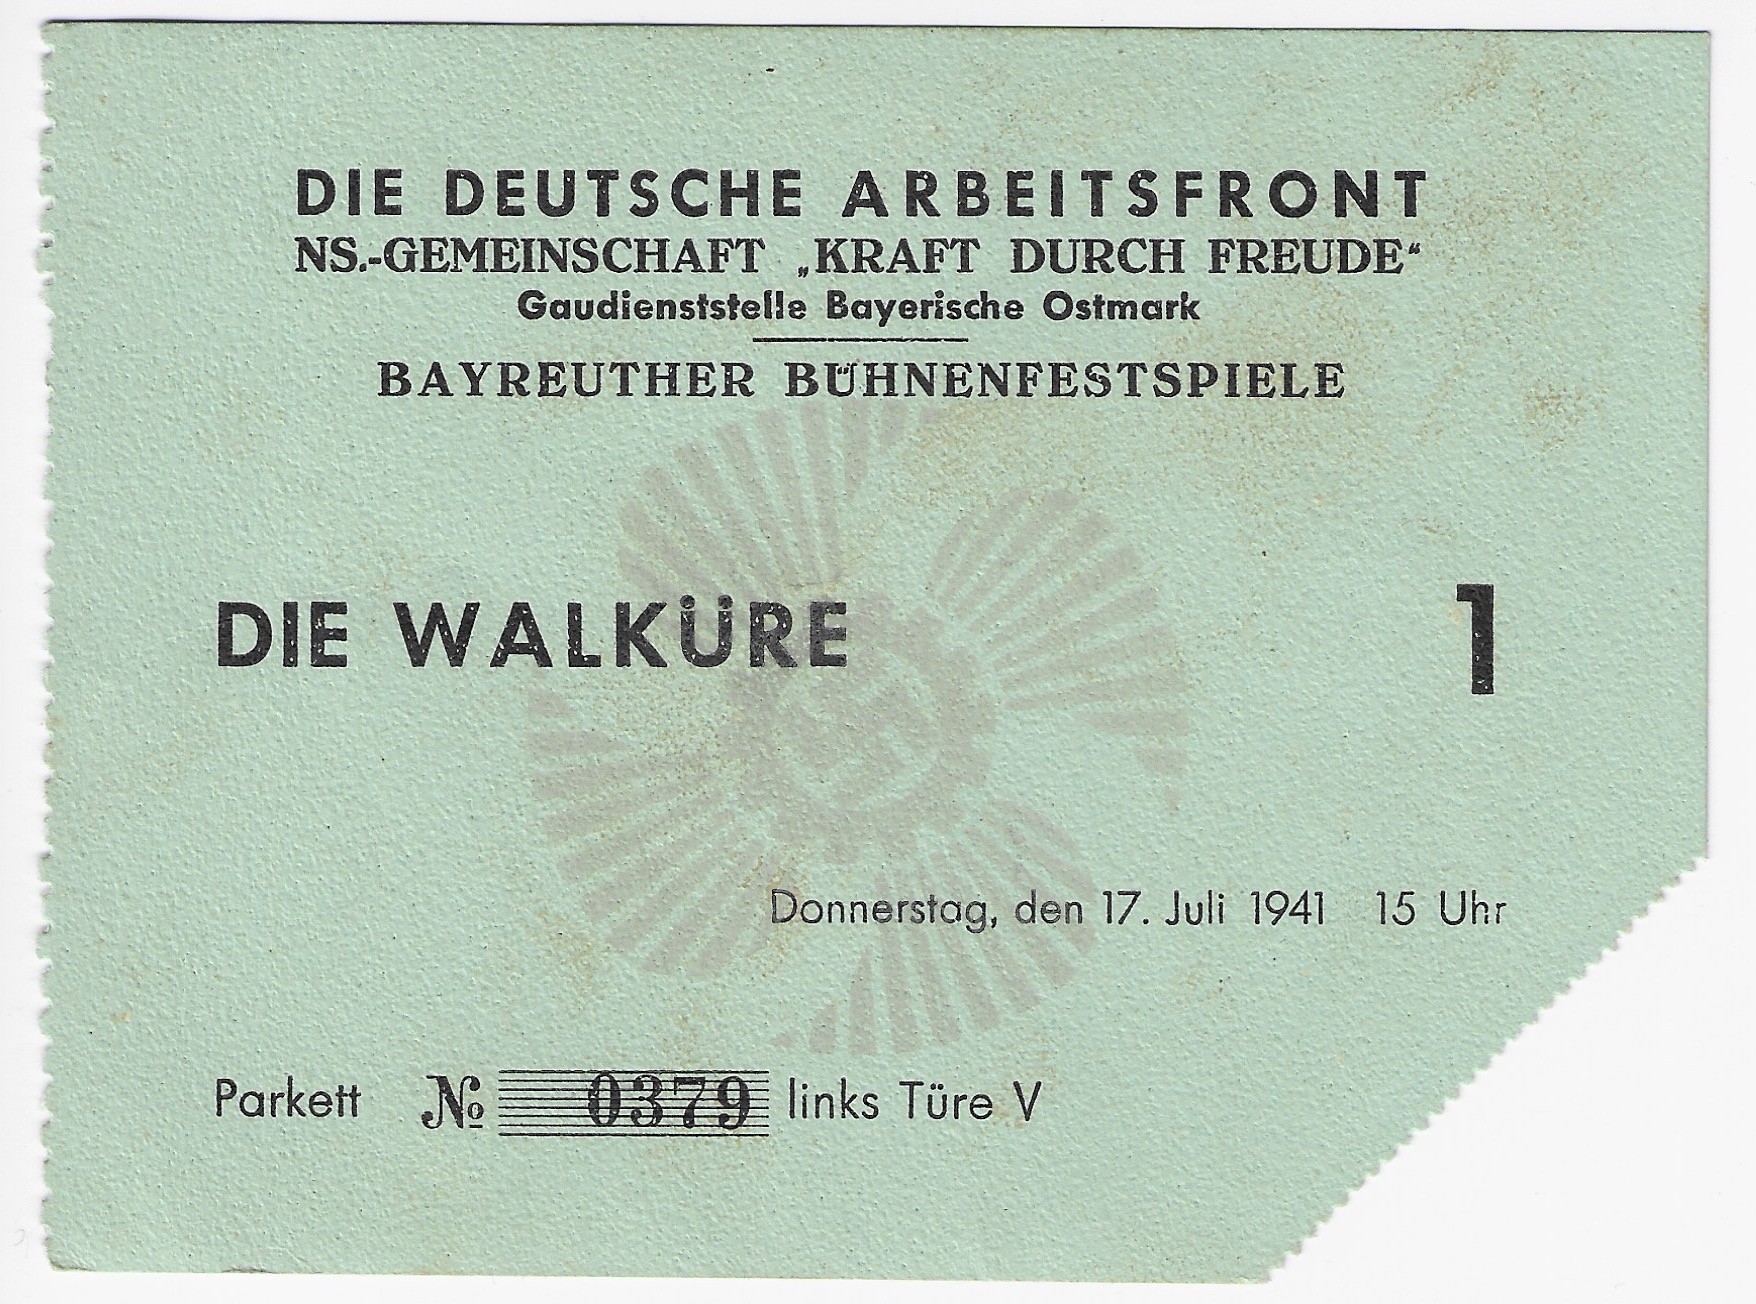 Bayreuther Bühnenfestspiele: Die Walküre 17. Juli 1941 (Rüdiger Koch CC BY-NC-ND)